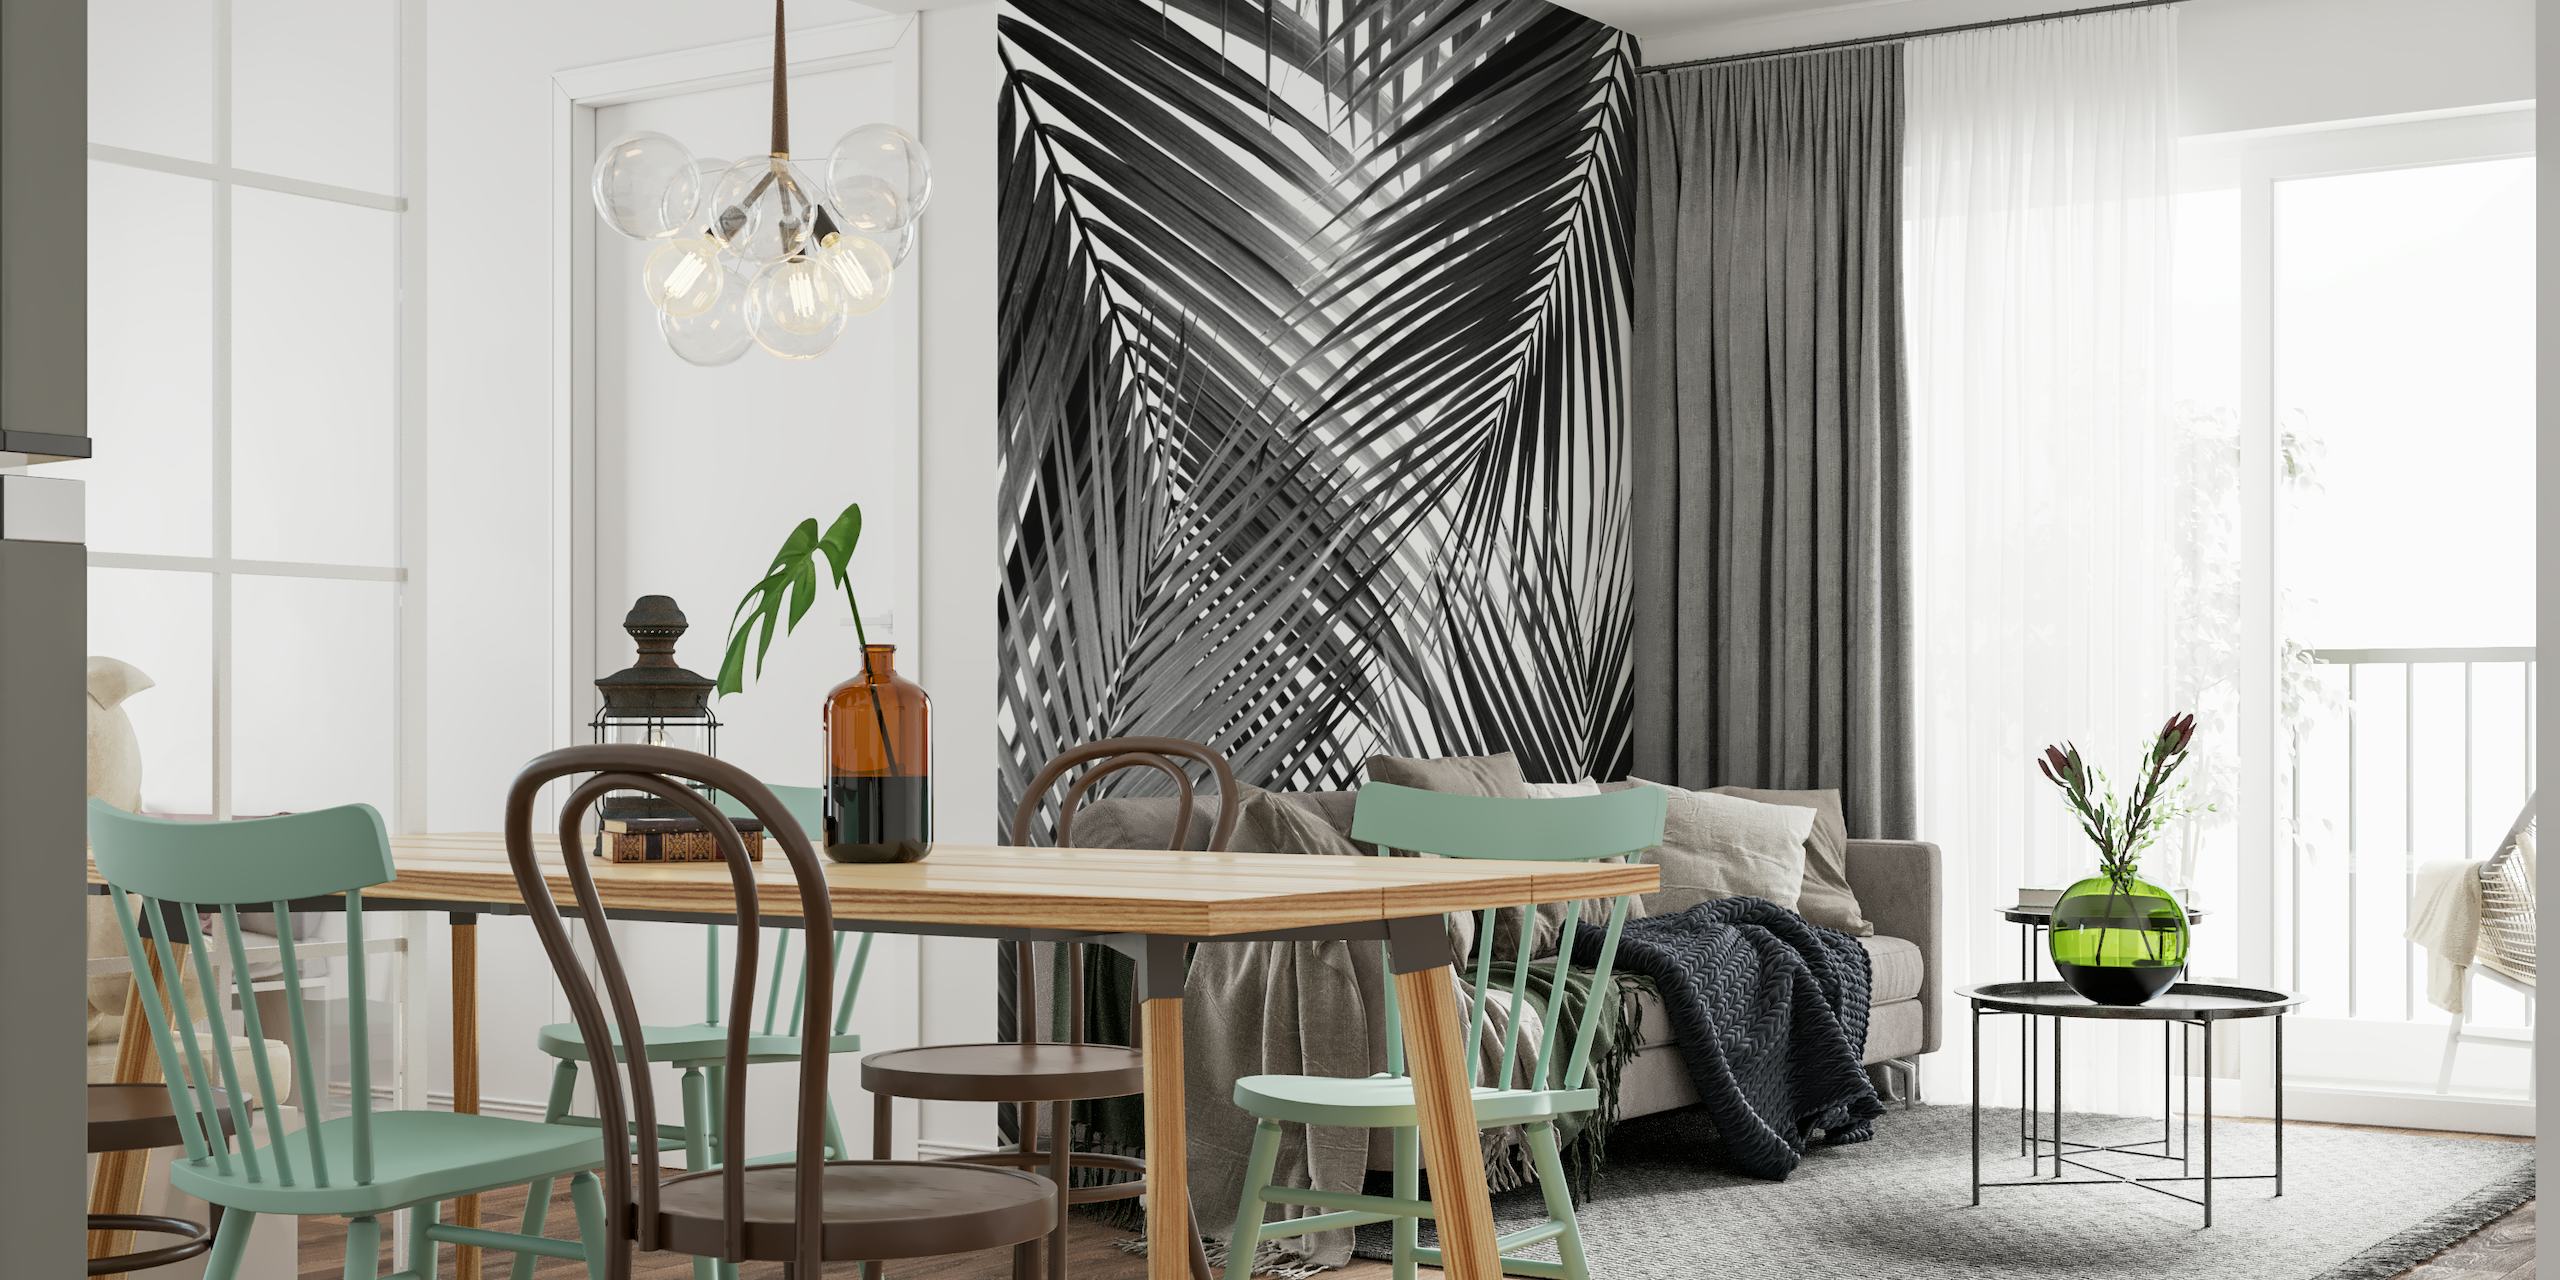 Mural preto e branco com design abstrato de folhas de palmeira